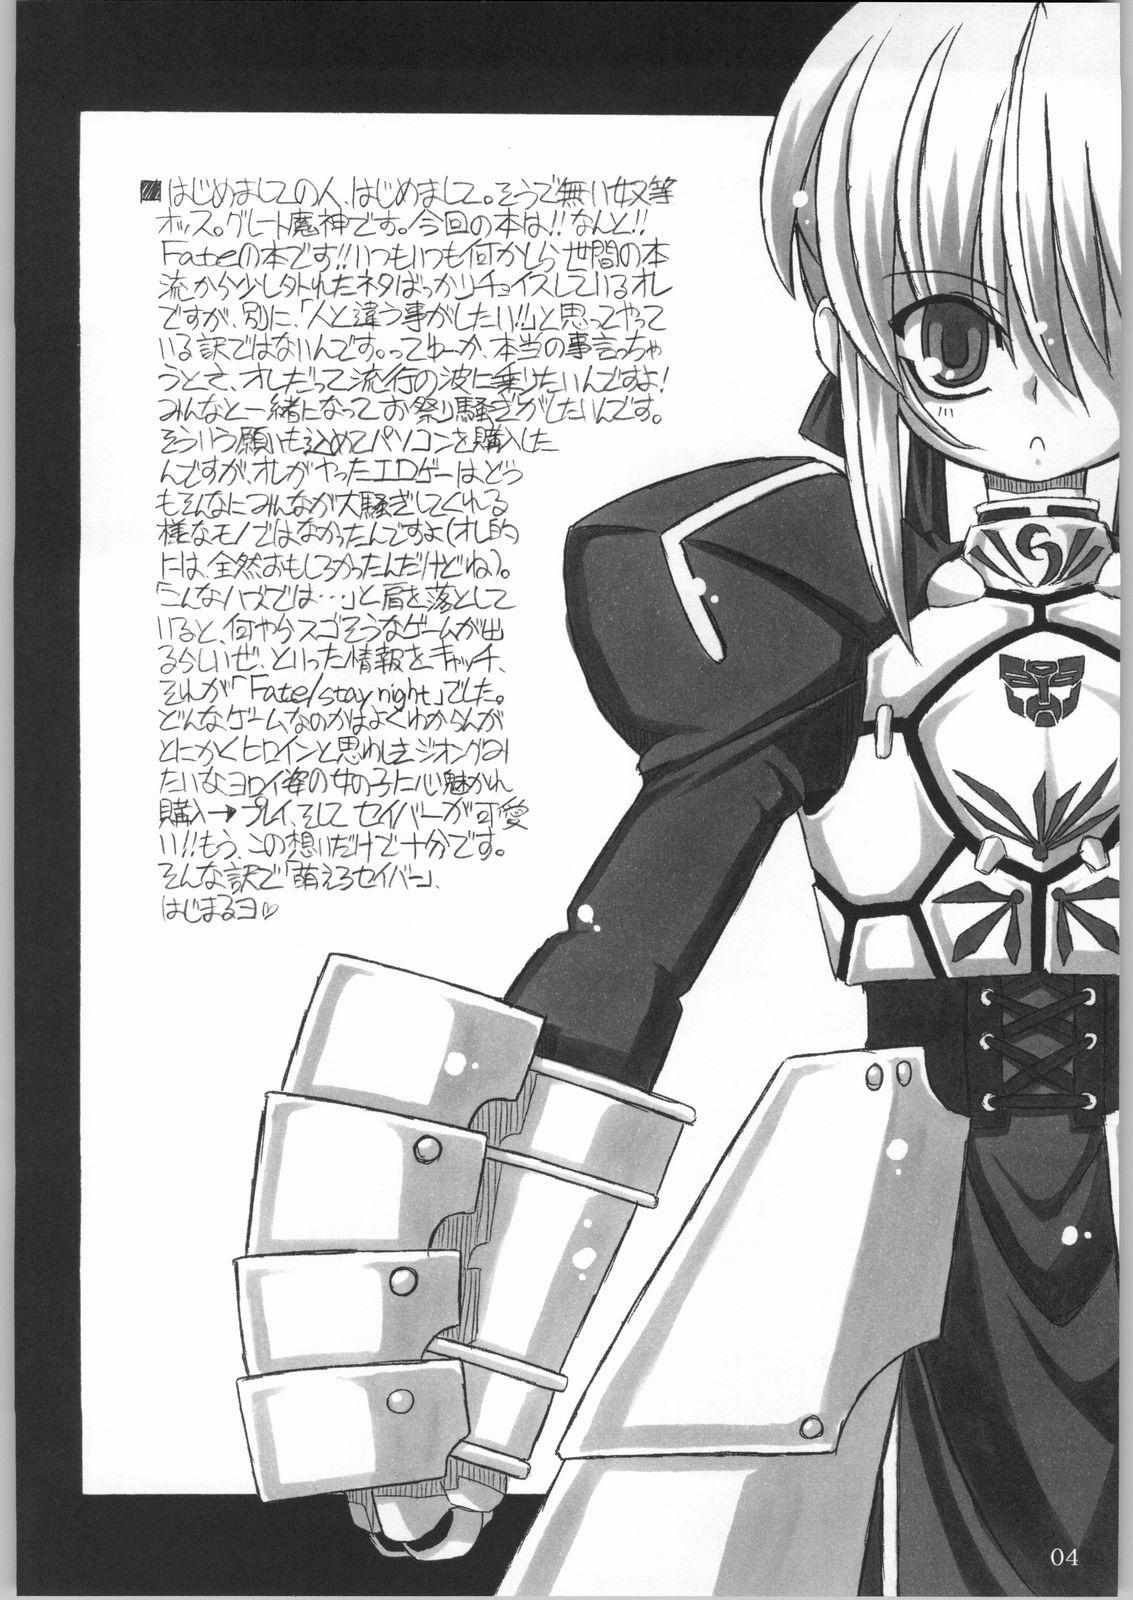 Horny Entaku No Kishi Monogatari Moero Saber - Fate stay night 3way - Page 3